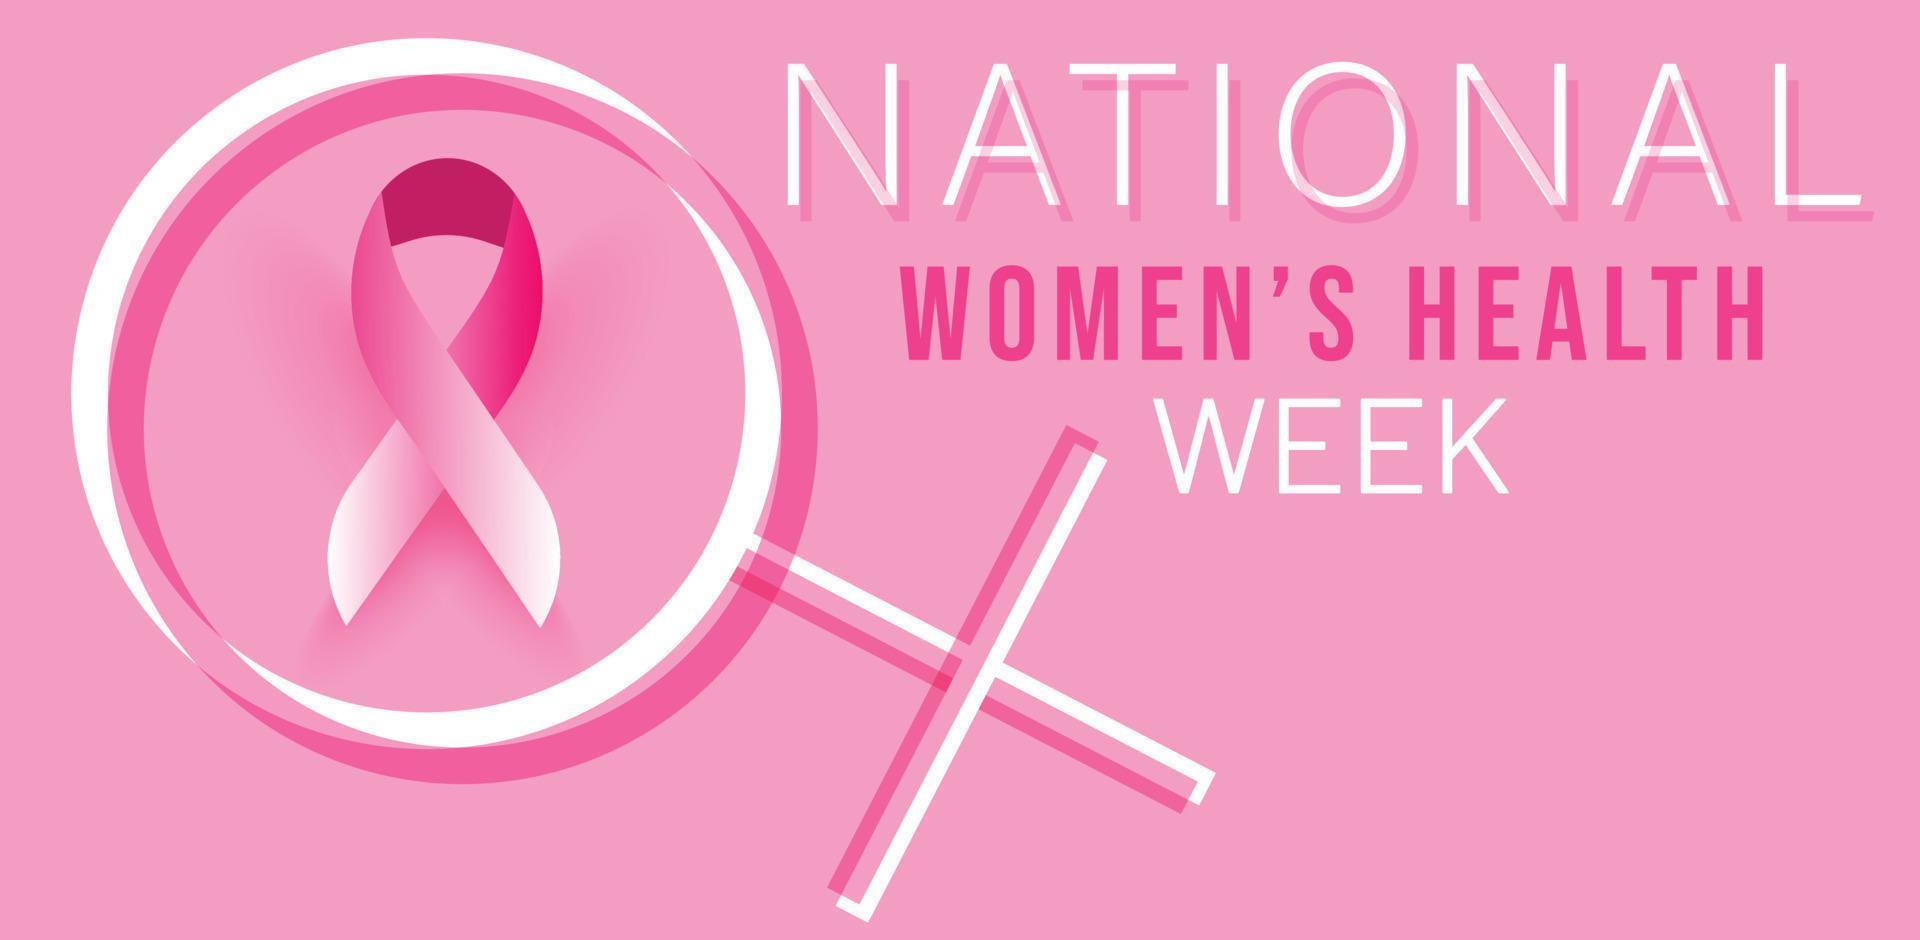 mei is nationaal vrouwen Gezondheid week. sjabloon voor achtergrond, banier, kaart, poster. vector illustratie.